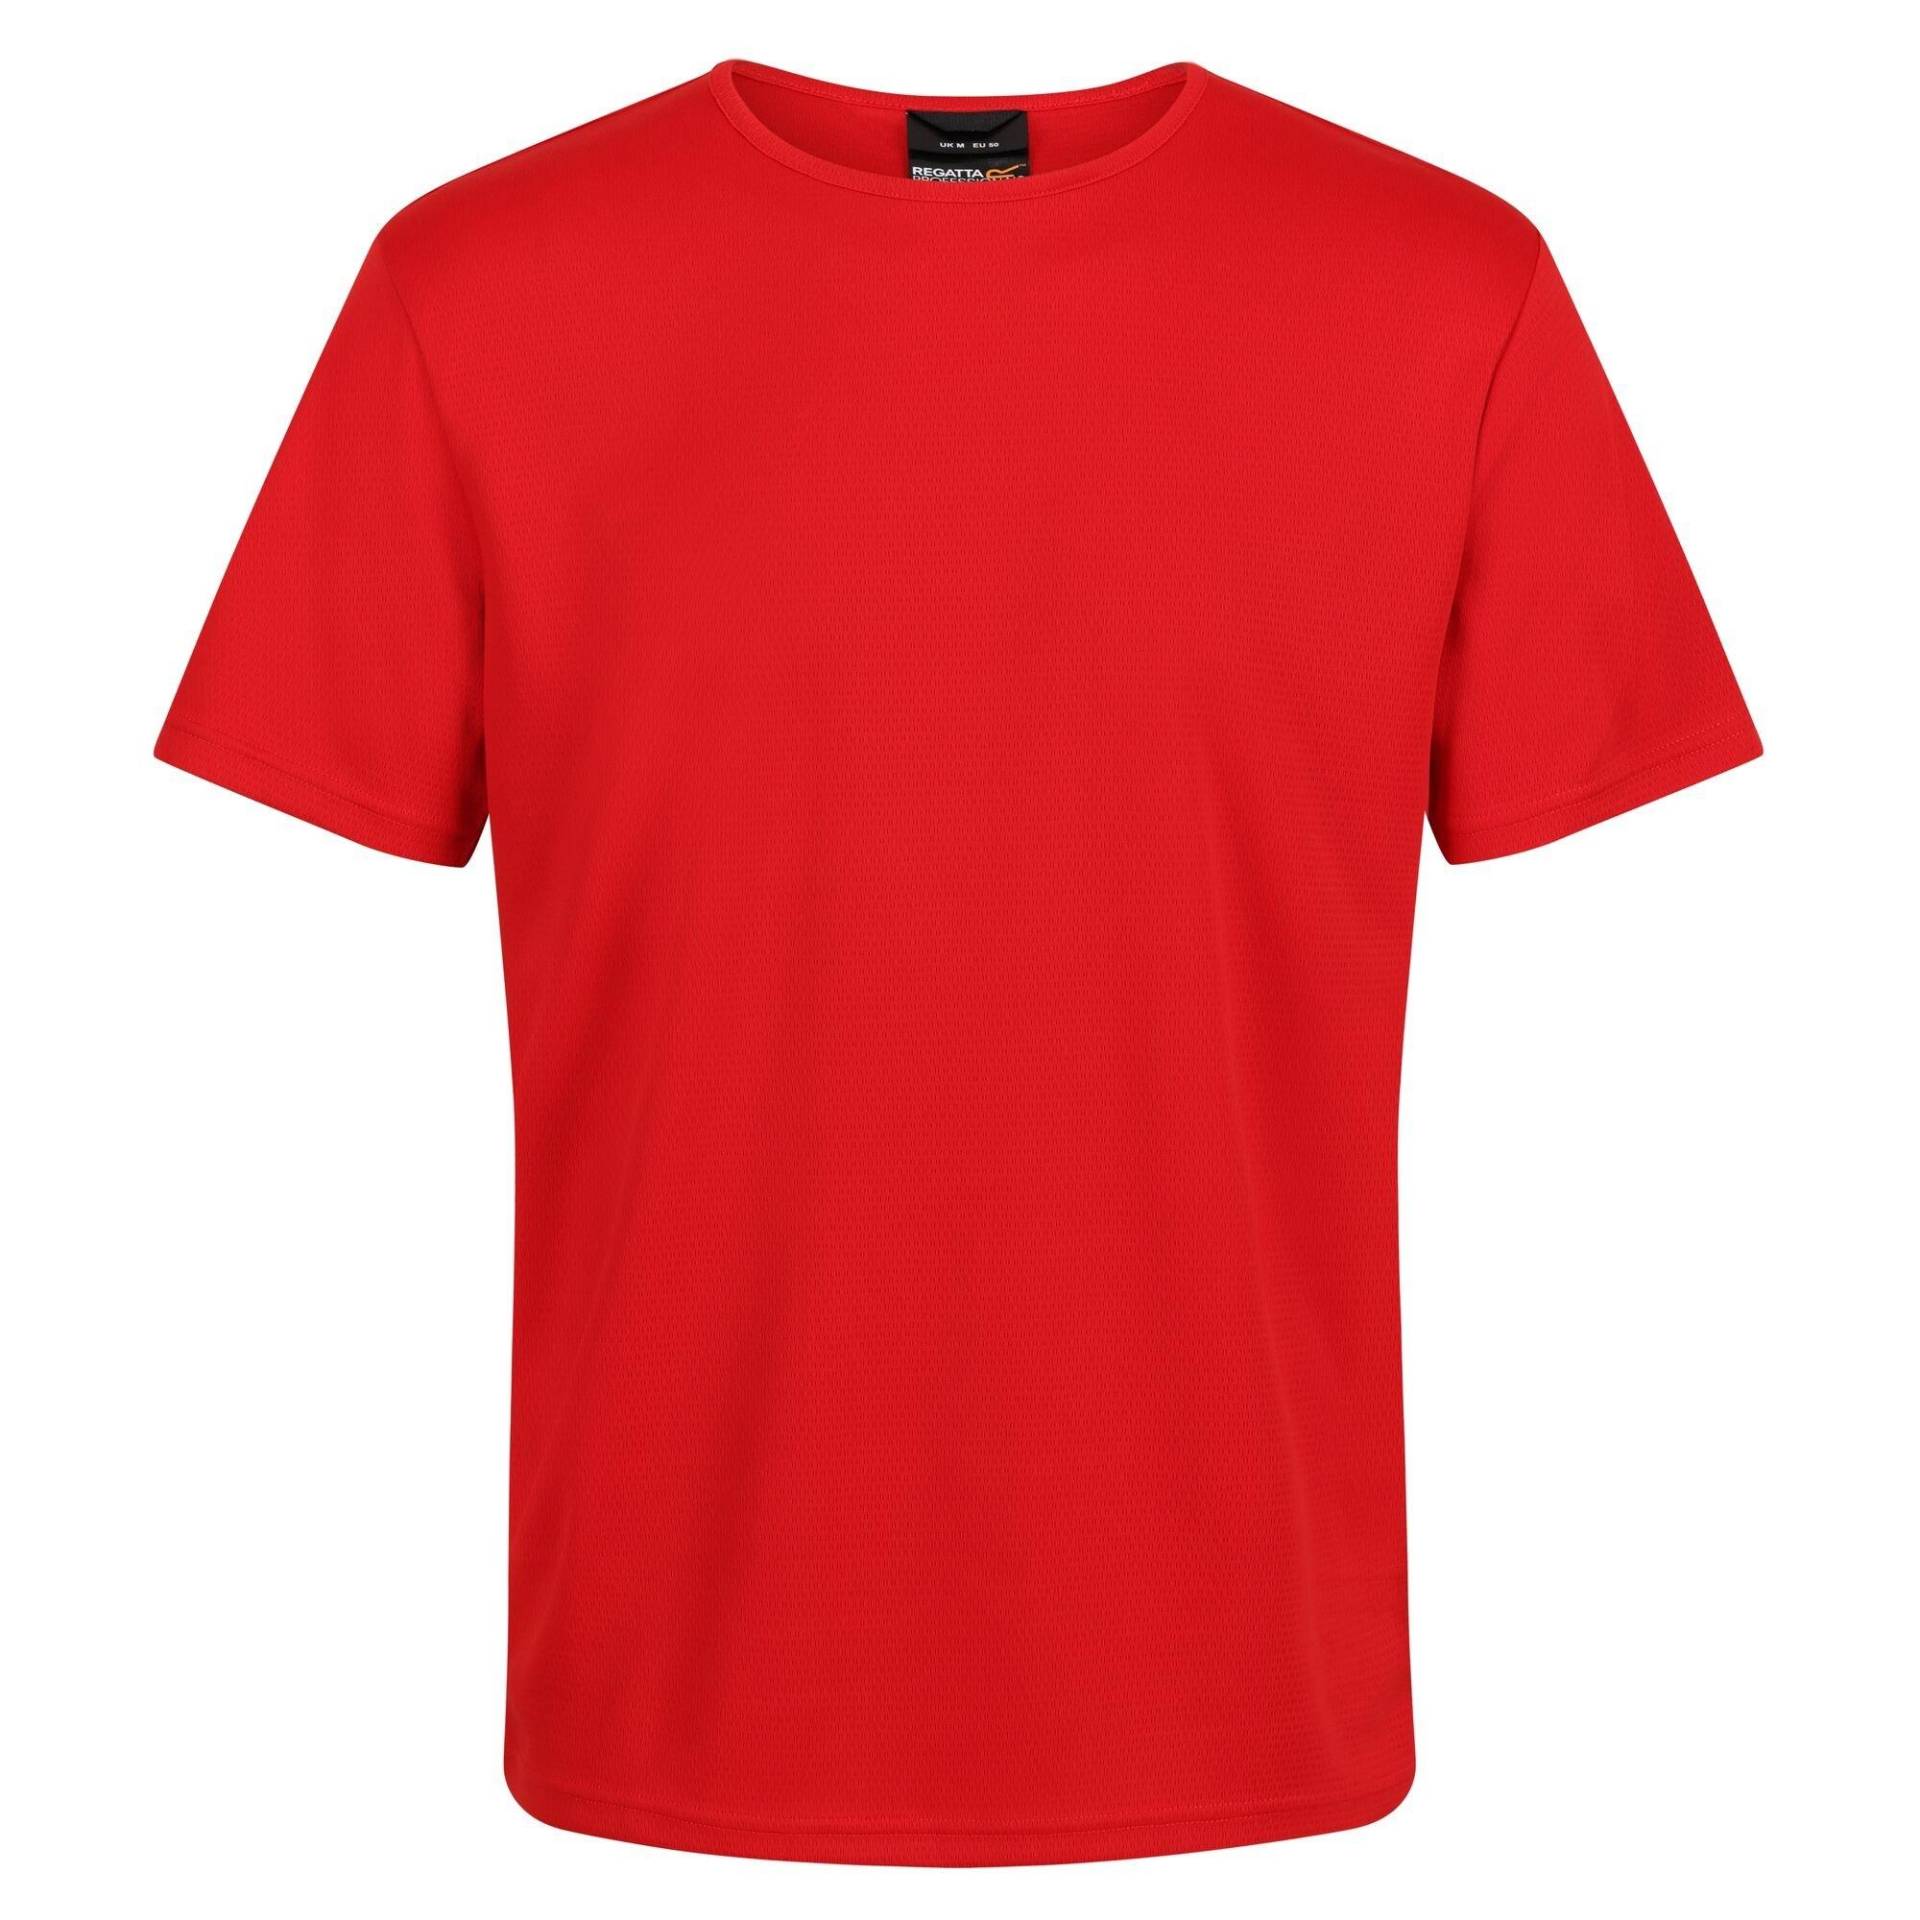 Pro Tshirt Feuchtigkeitsabweisend Herren Rot Bunt M von Regatta